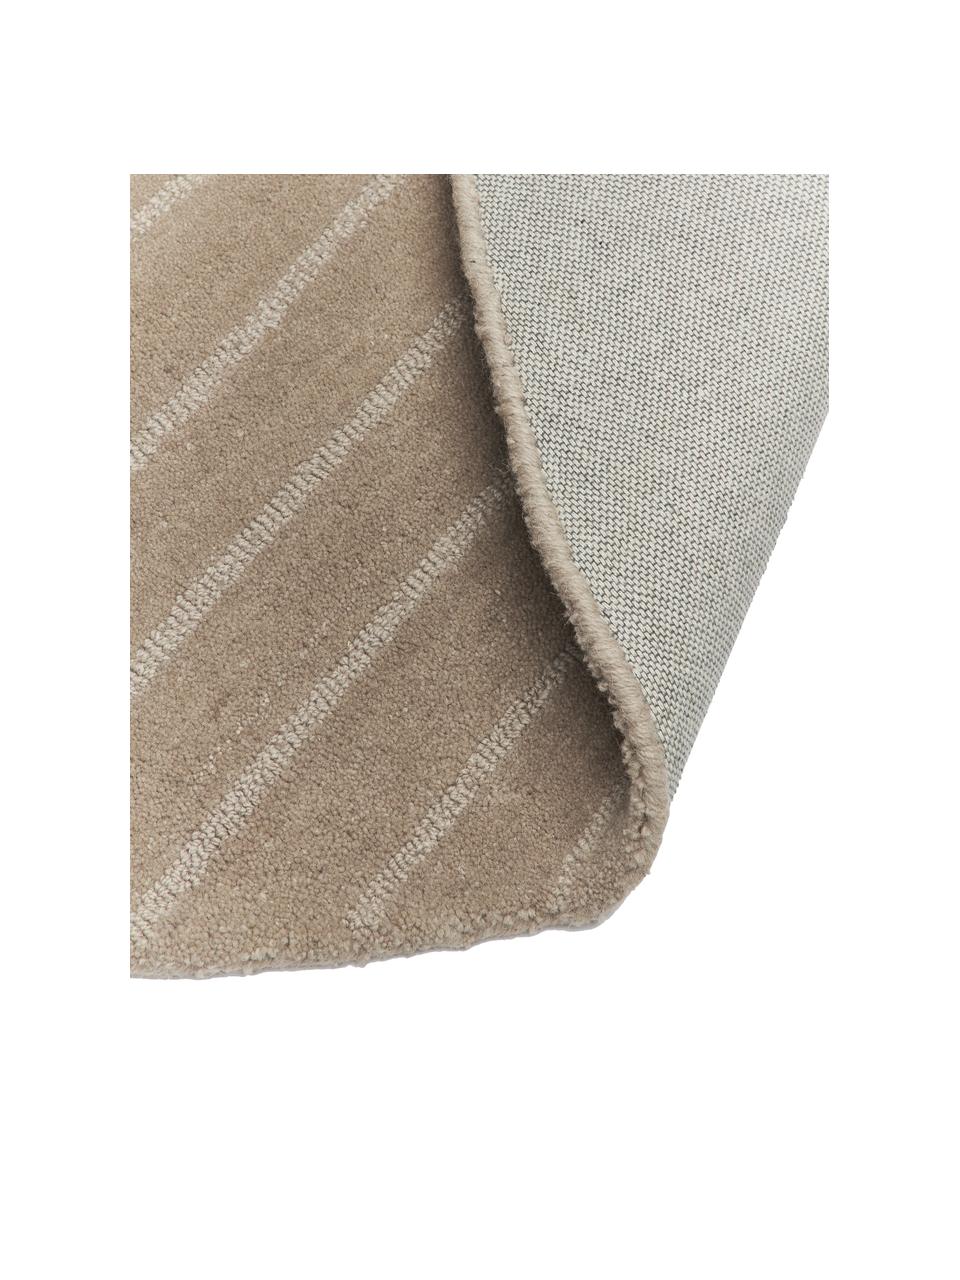 Ronde handgetuft wollen vloerkleed Mason in taupe, Bovenzijde: 100% wol, Onderzijde: 100% katoen, Beige, Ø 200 cm (maat L)